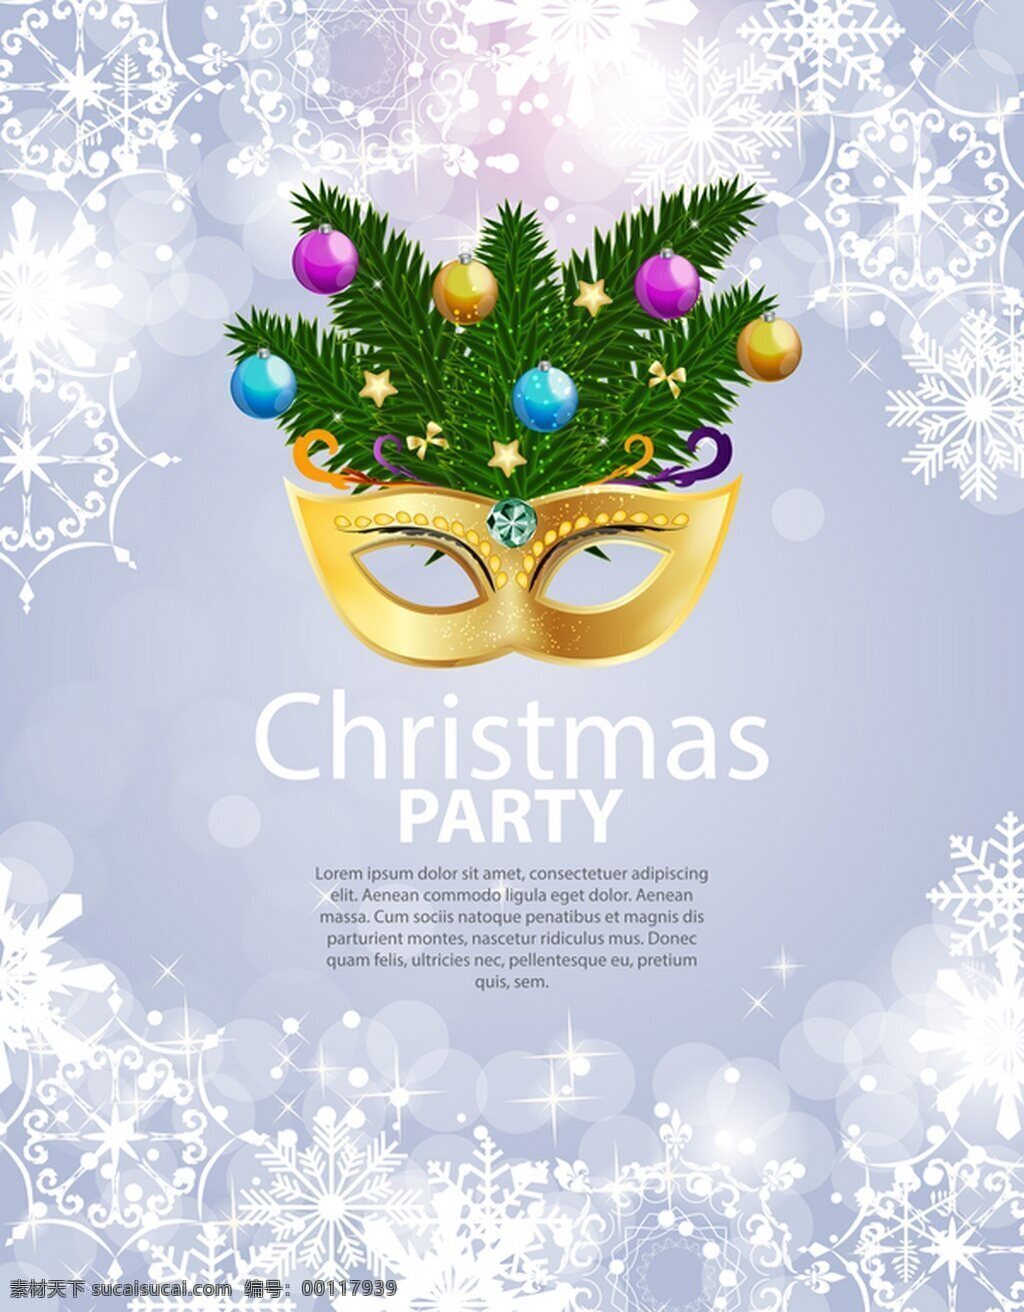 白色 雪花 圣诞 派对 海报 矢量 模版 化装舞会海报 面具 圣诞节